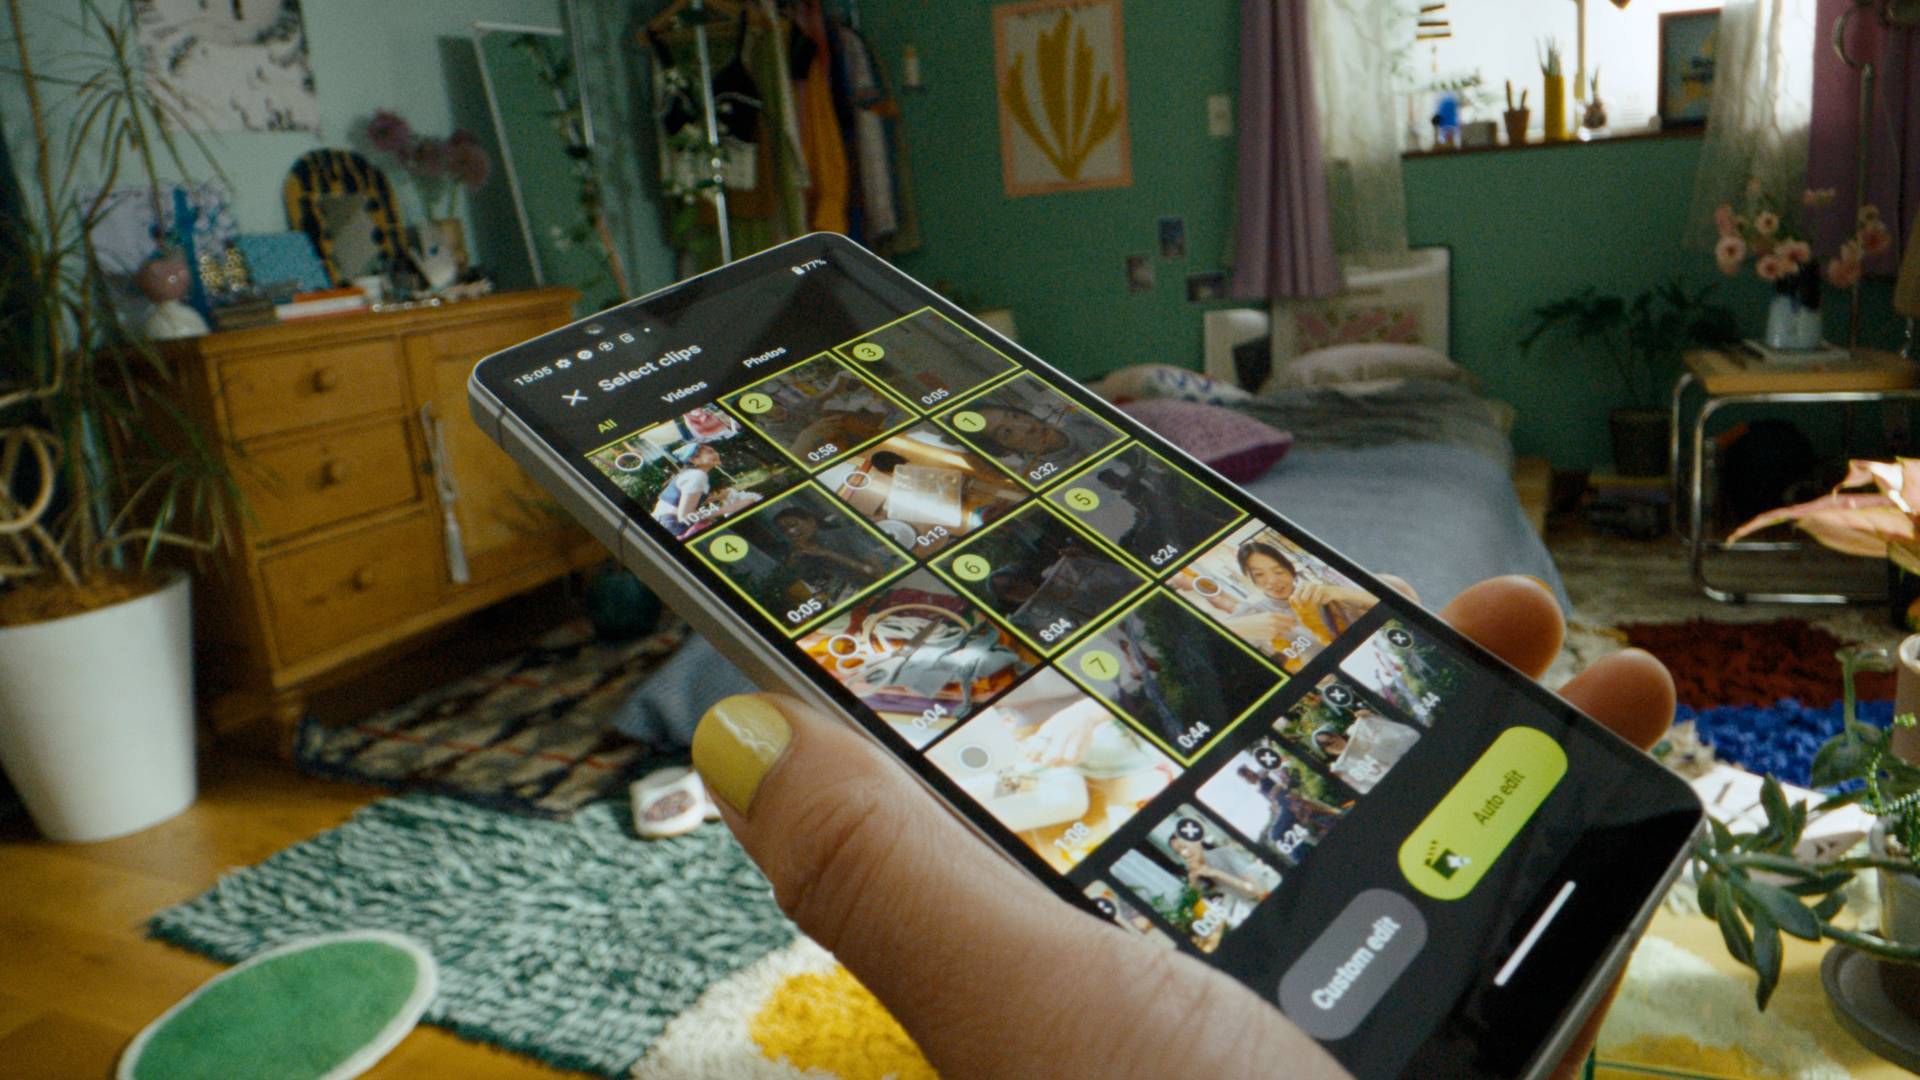 Sony 發表全新合手旗艦智慧手機 Xperia 5 V 全新影片製作器 1 分鐘快速出片 Fun 手創作即刻分享 @3C 達人廖阿輝